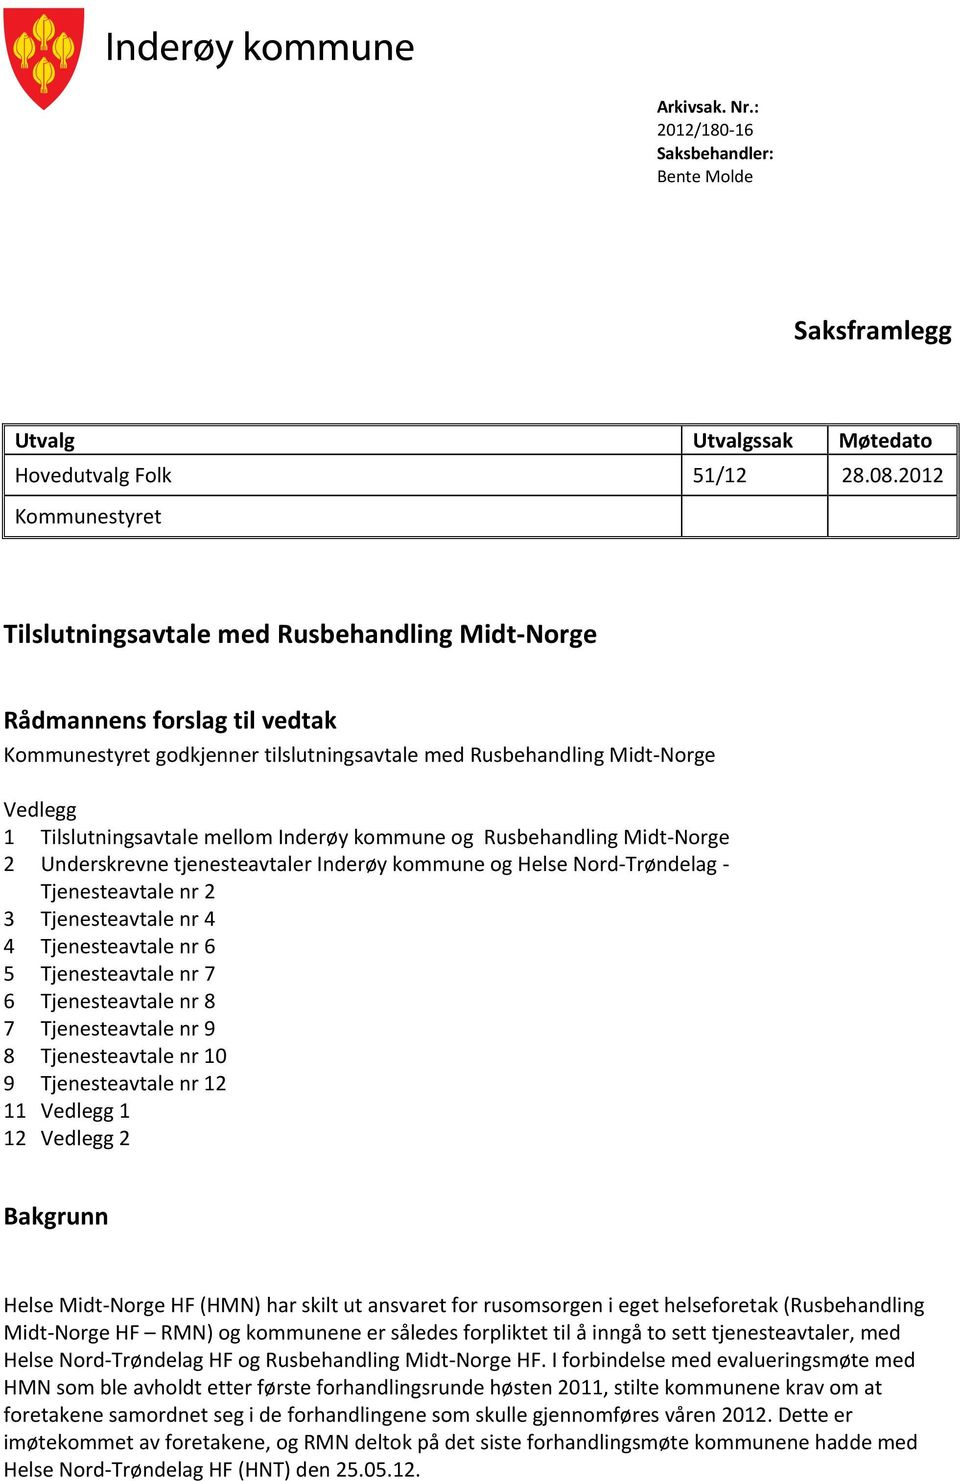 mellom Inderøy kommune og Rusbehandling Midt-Norge 2 Underskrevne tjenesteavtaler Inderøy kommune og Helse Nord-Trøndelag - Tjenesteavtale nr 2 3 Tjenesteavtale nr 4 4 Tjenesteavtale nr 6 5